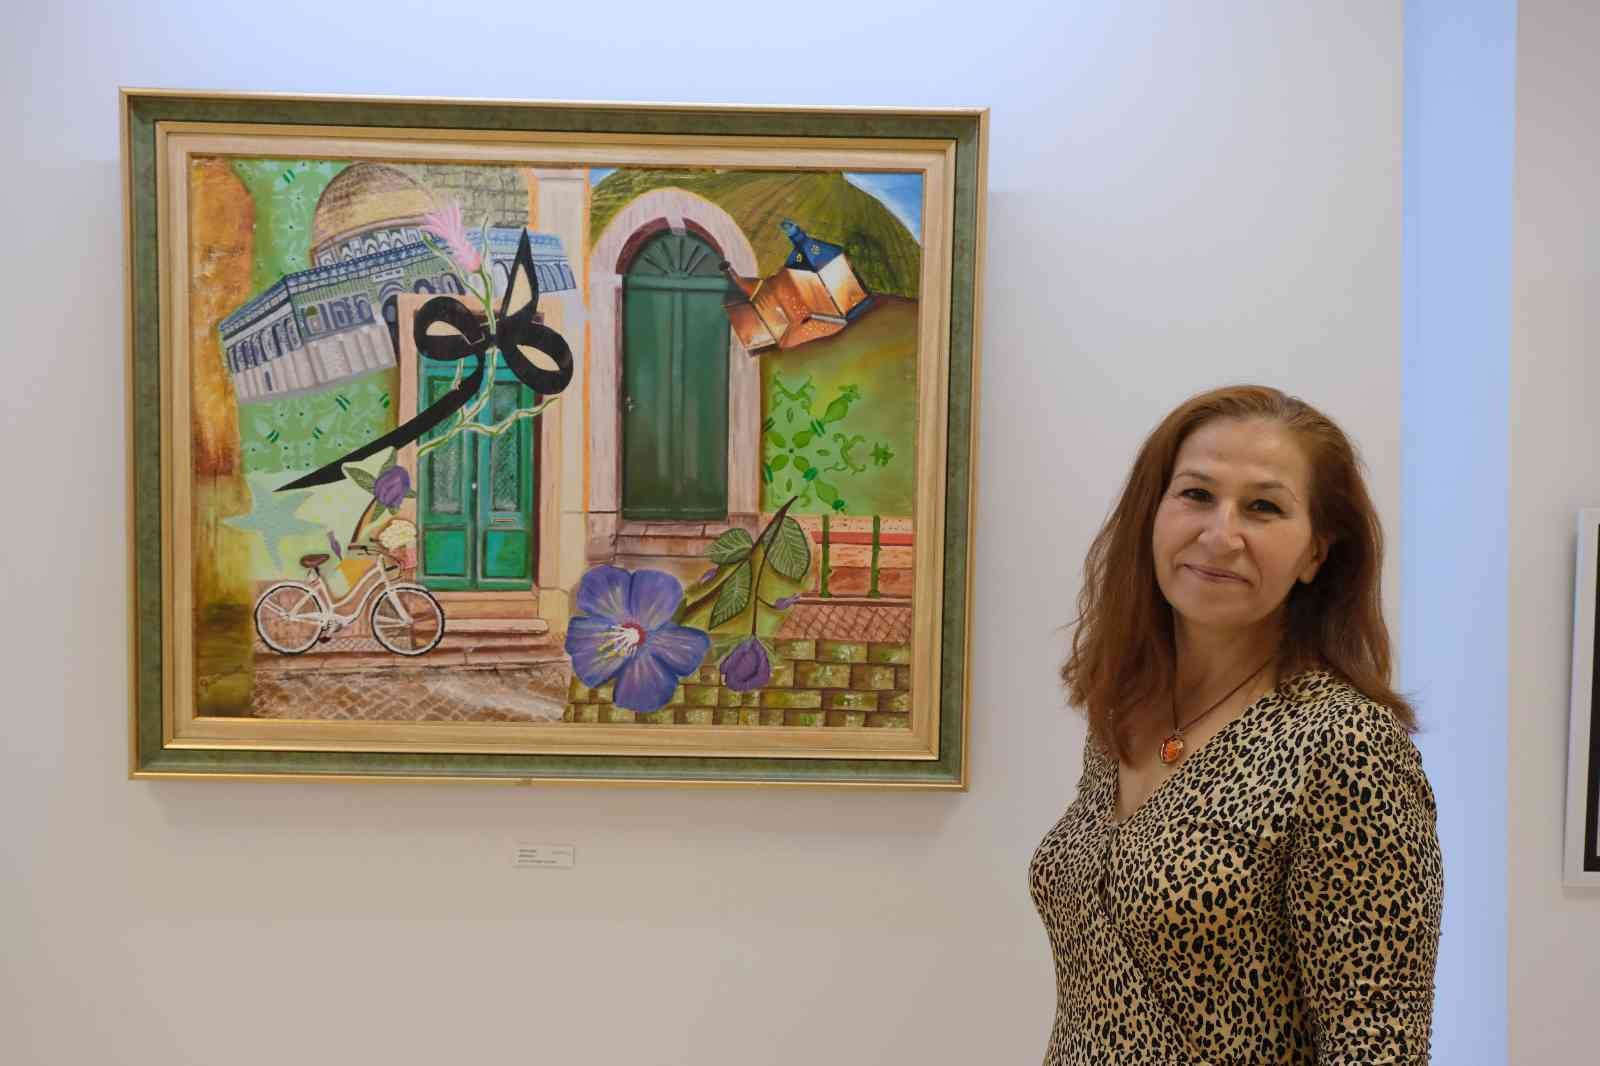 Kanseri sanatla yendi, Maltepe’de ‘Şifa’ sergisini açtı #istanbul